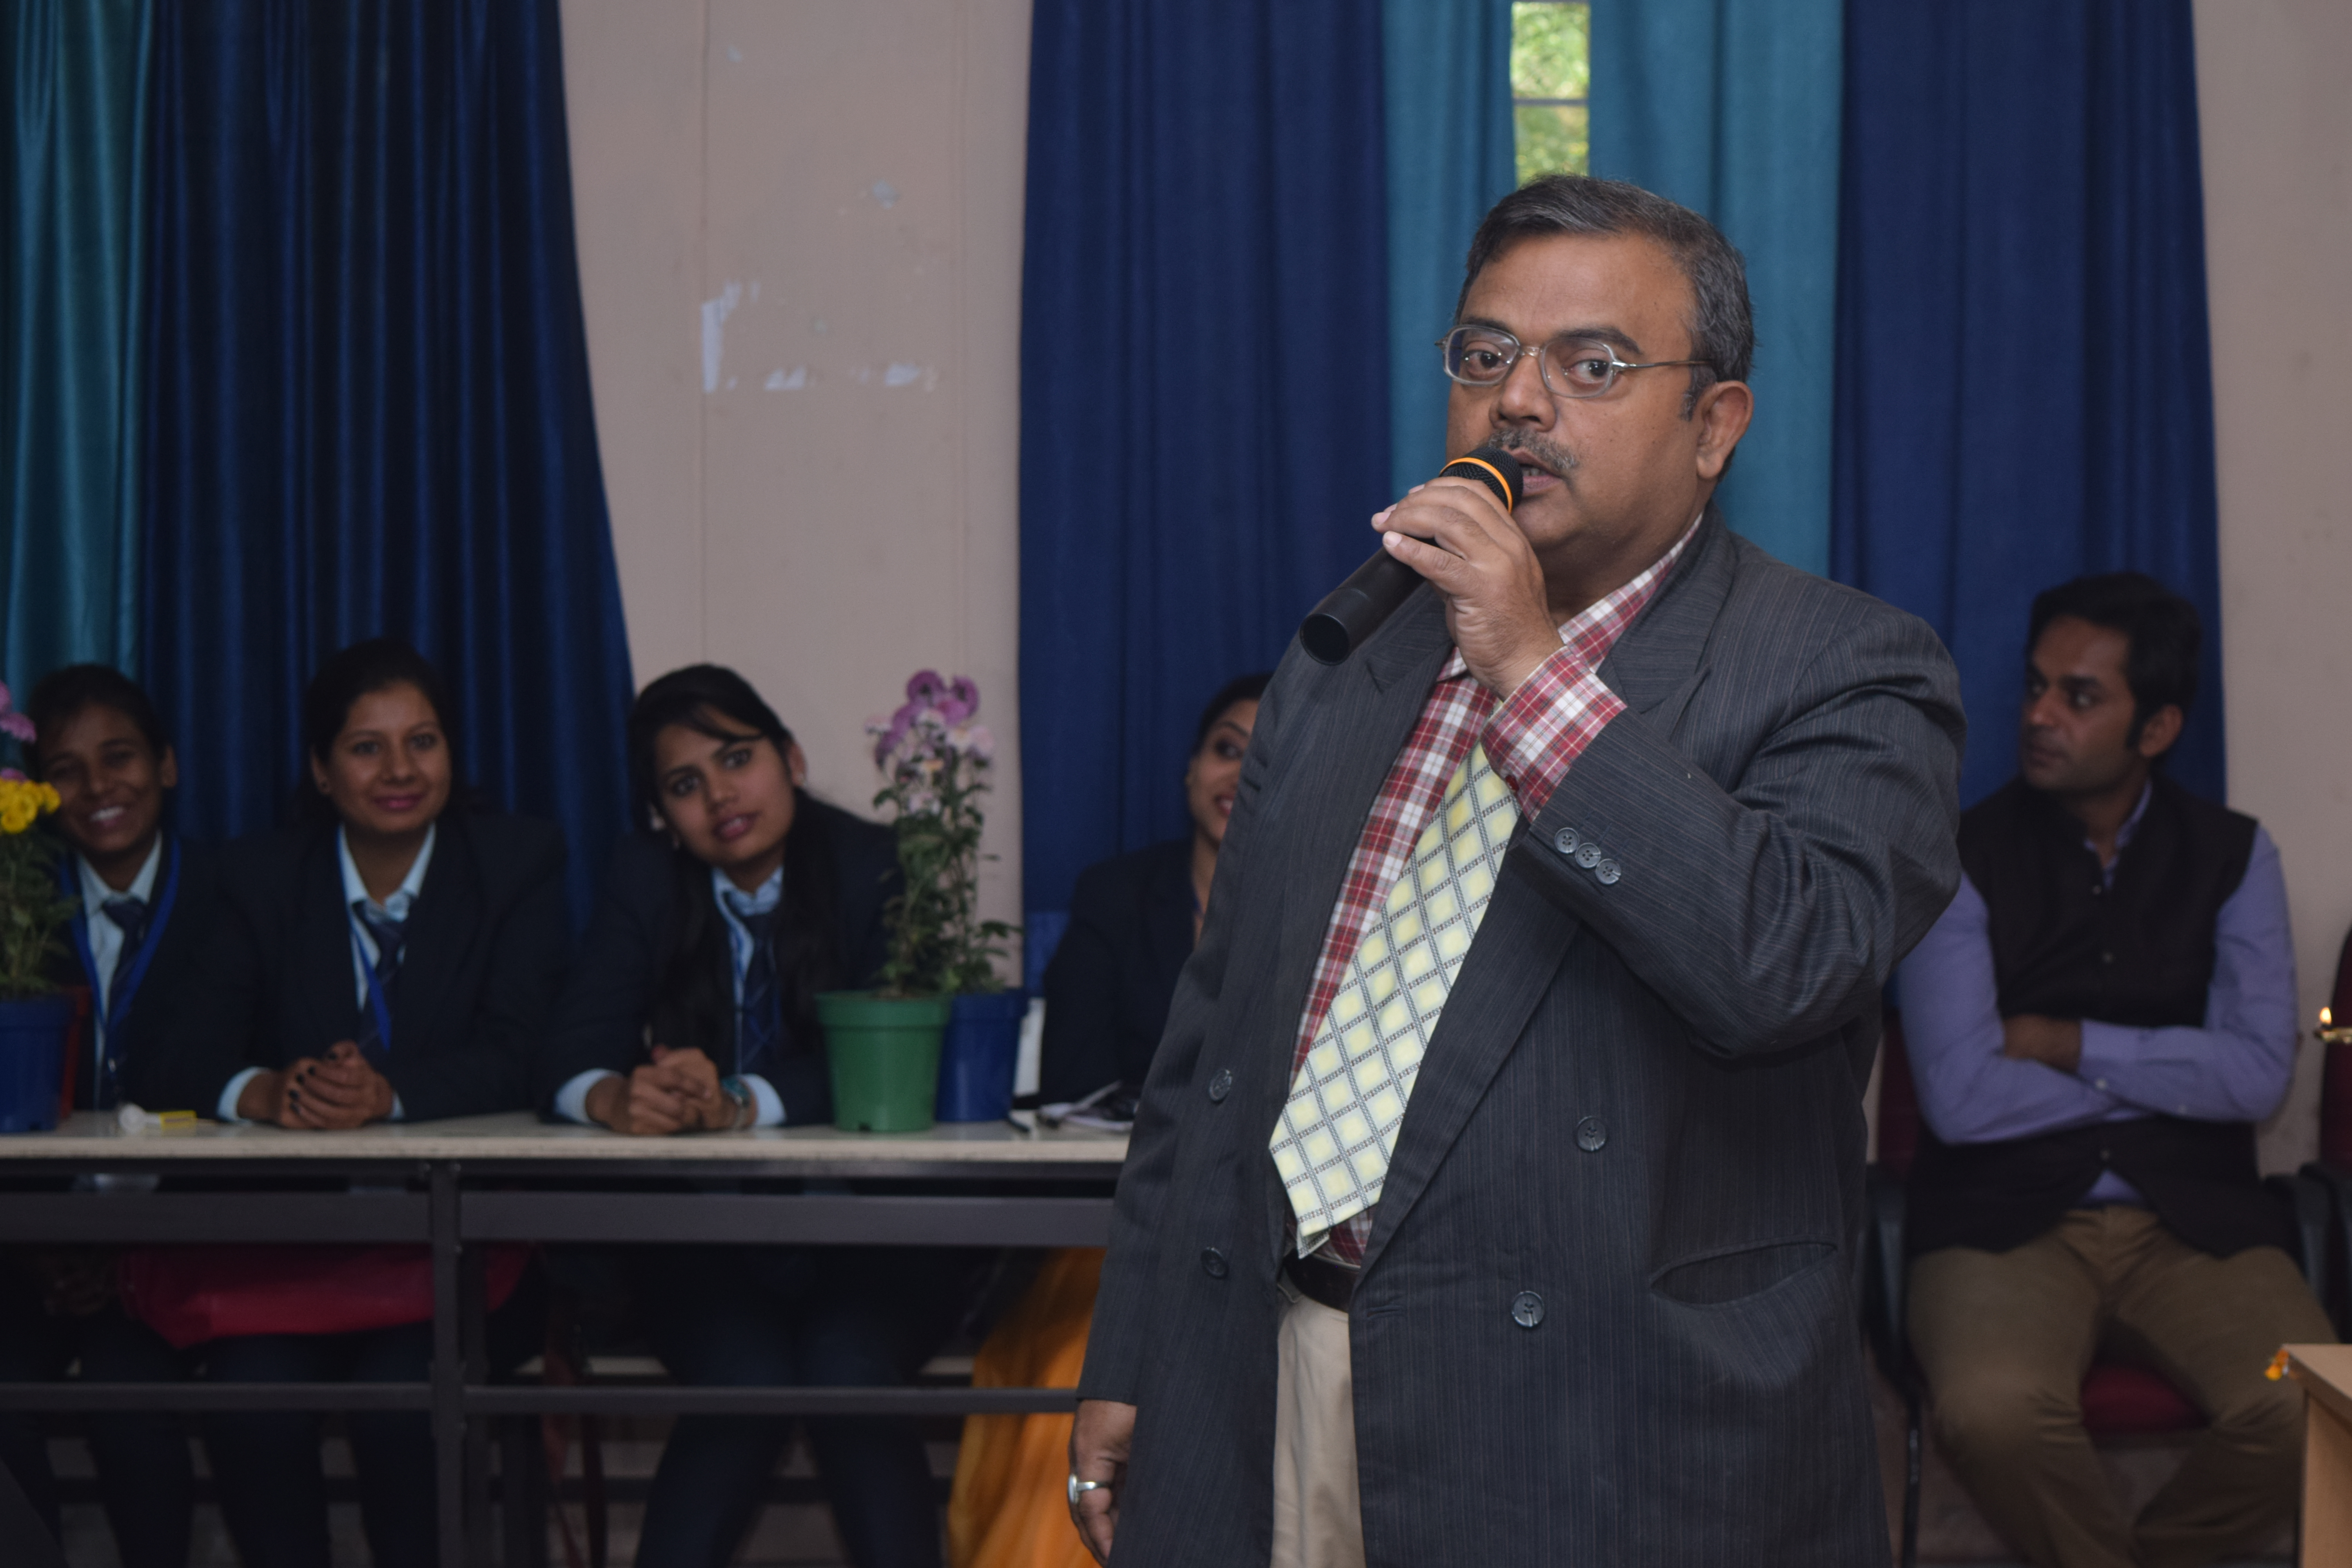 Thinking Social Seminar at Ranchi University